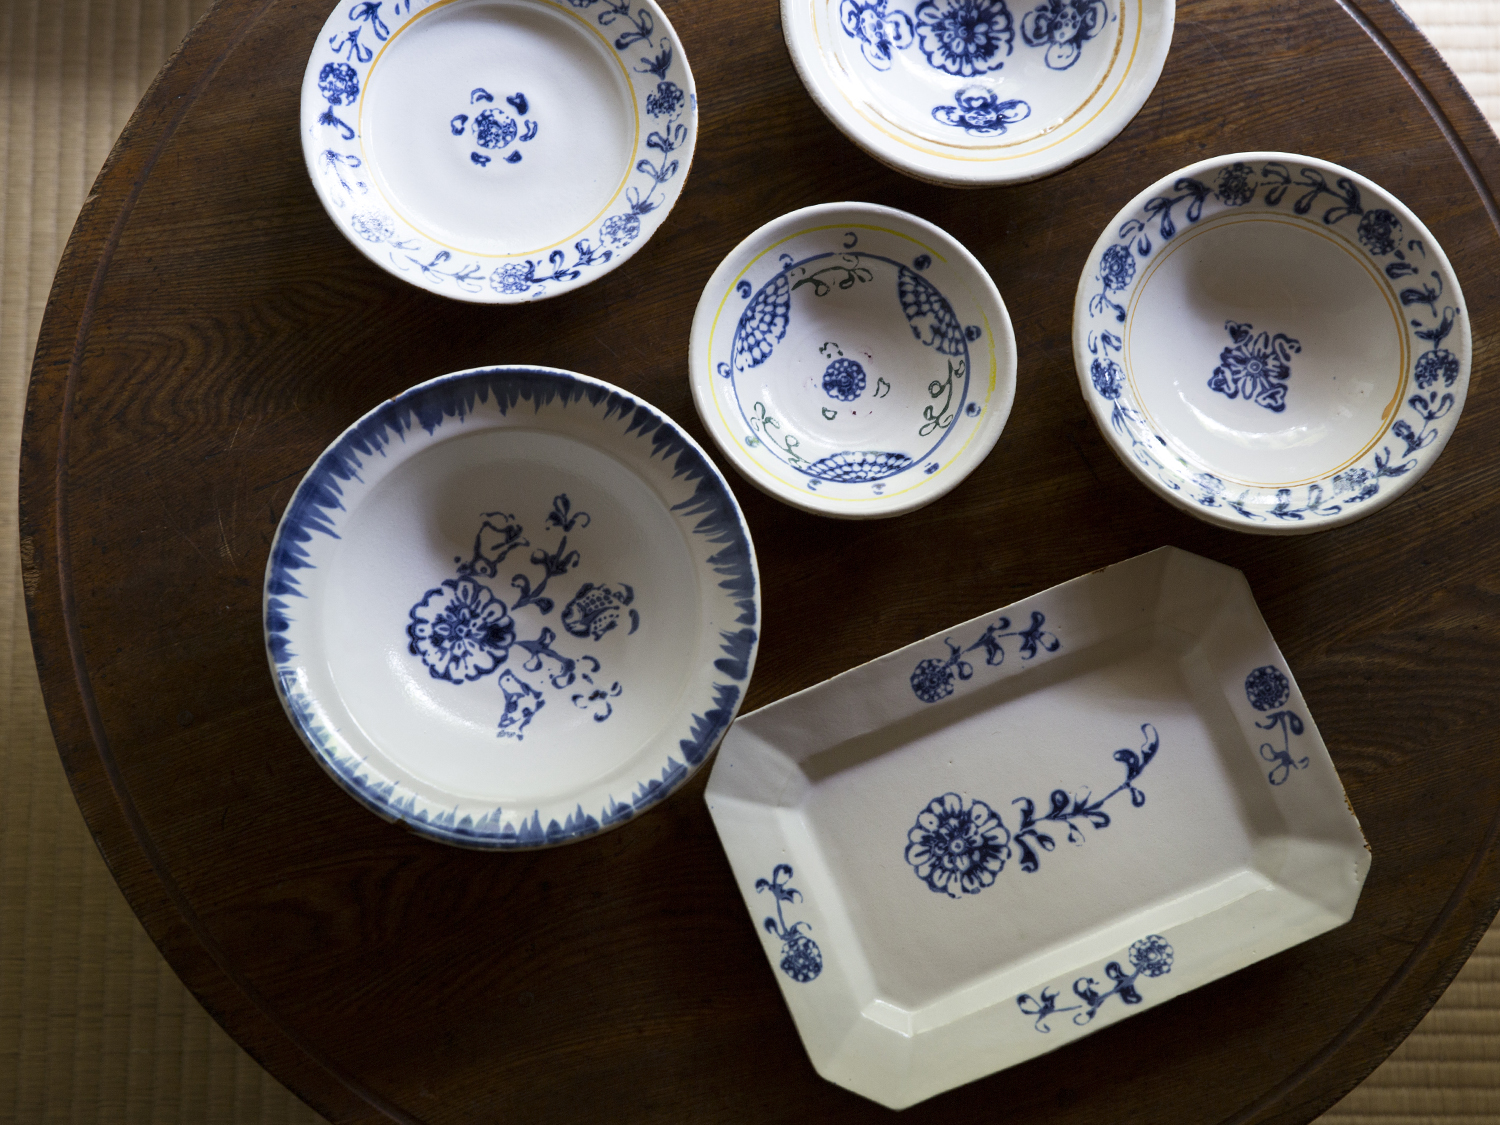 伊藤 聡信さん作品をご紹介します。白釉印判のお皿と鉢です。<br><br>※完売致しました